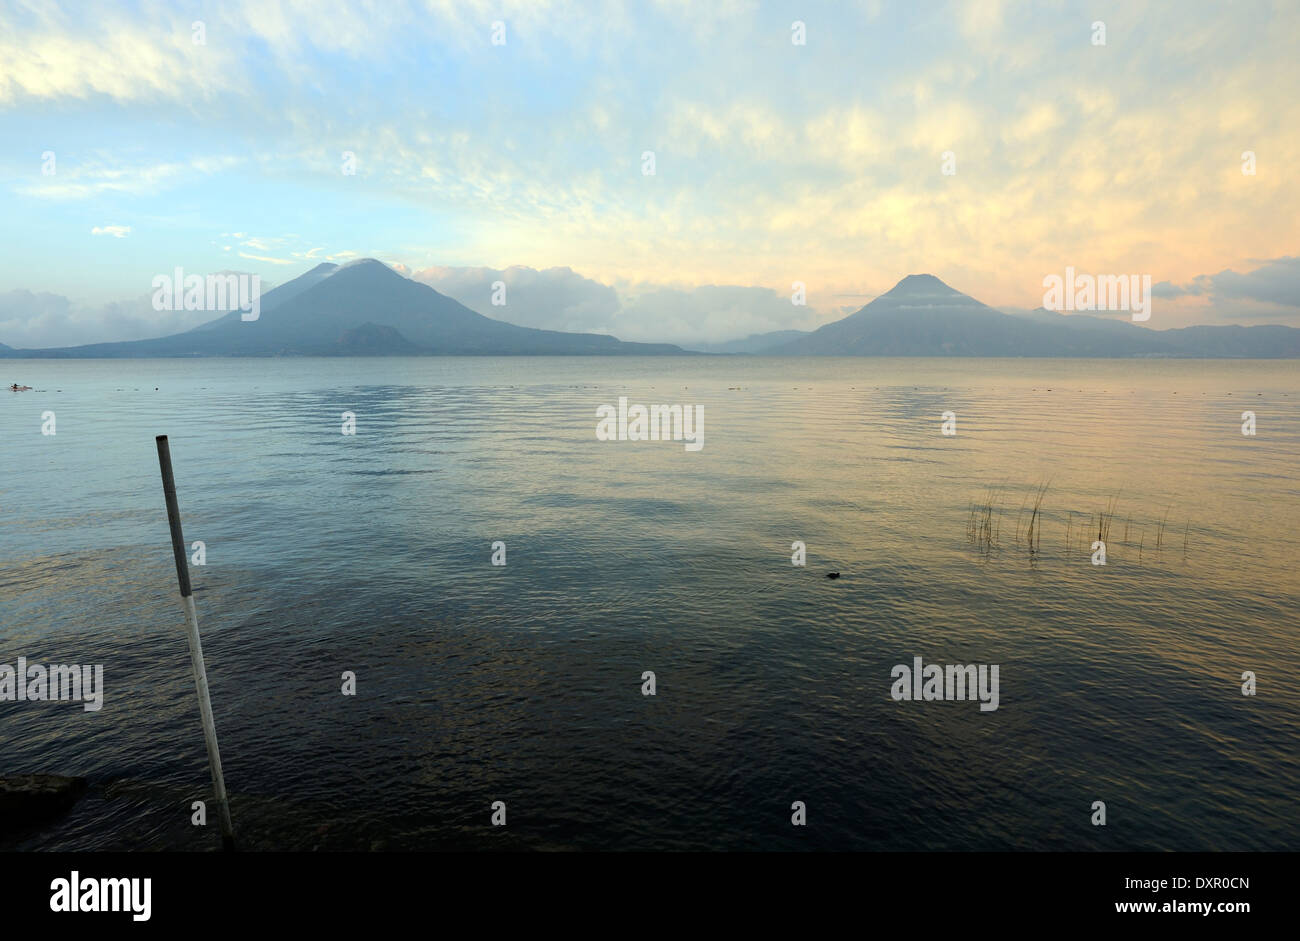 La mattina presto vista sul lago Atitlan da Panajachel. A sinistra sono Volcan Toliman, 3153m, e dietro di esso, Volcan Atltlan Foto Stock